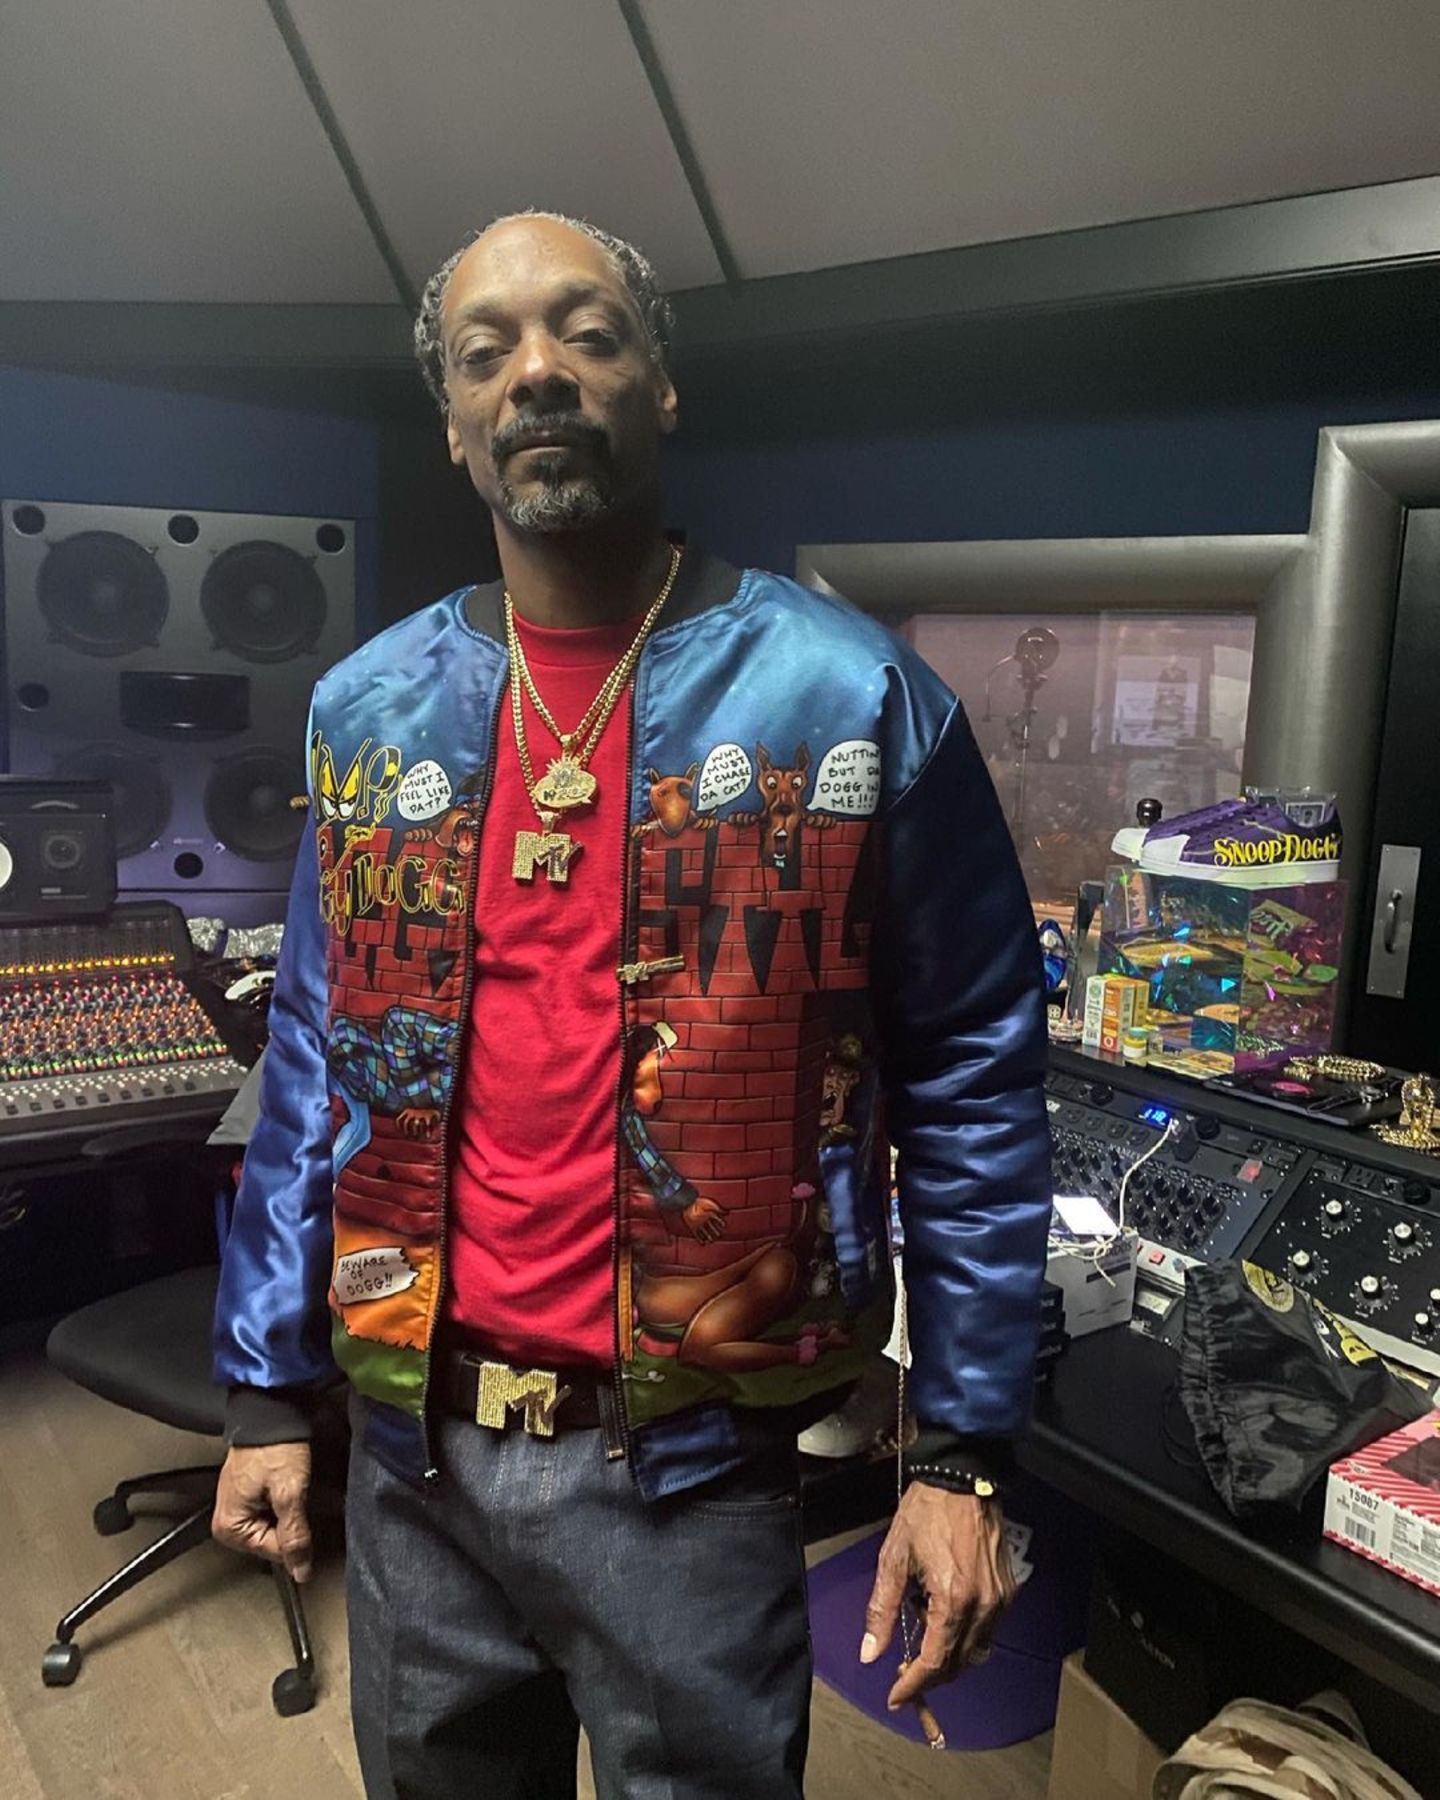 Der Sänger Snoop Dogg schaut auf eine eindrucksvolle Musikkarierre zurück. Unzählige Top-Ten-Hits und ausverkaufte Tourneen – weltweit. Und auch heute noch macht der 49-Jährige Musik, wie dieser Schnappschuss aus seinem Tonstudio beweist. Eigentlich alles wie immer, oder? Nicht ganz. Die grauen Haare im Bart und auf dem Kopf verraten dann doch, dass seit Hits wie "Still D.R.E" einige Jahre vergangen sind. 